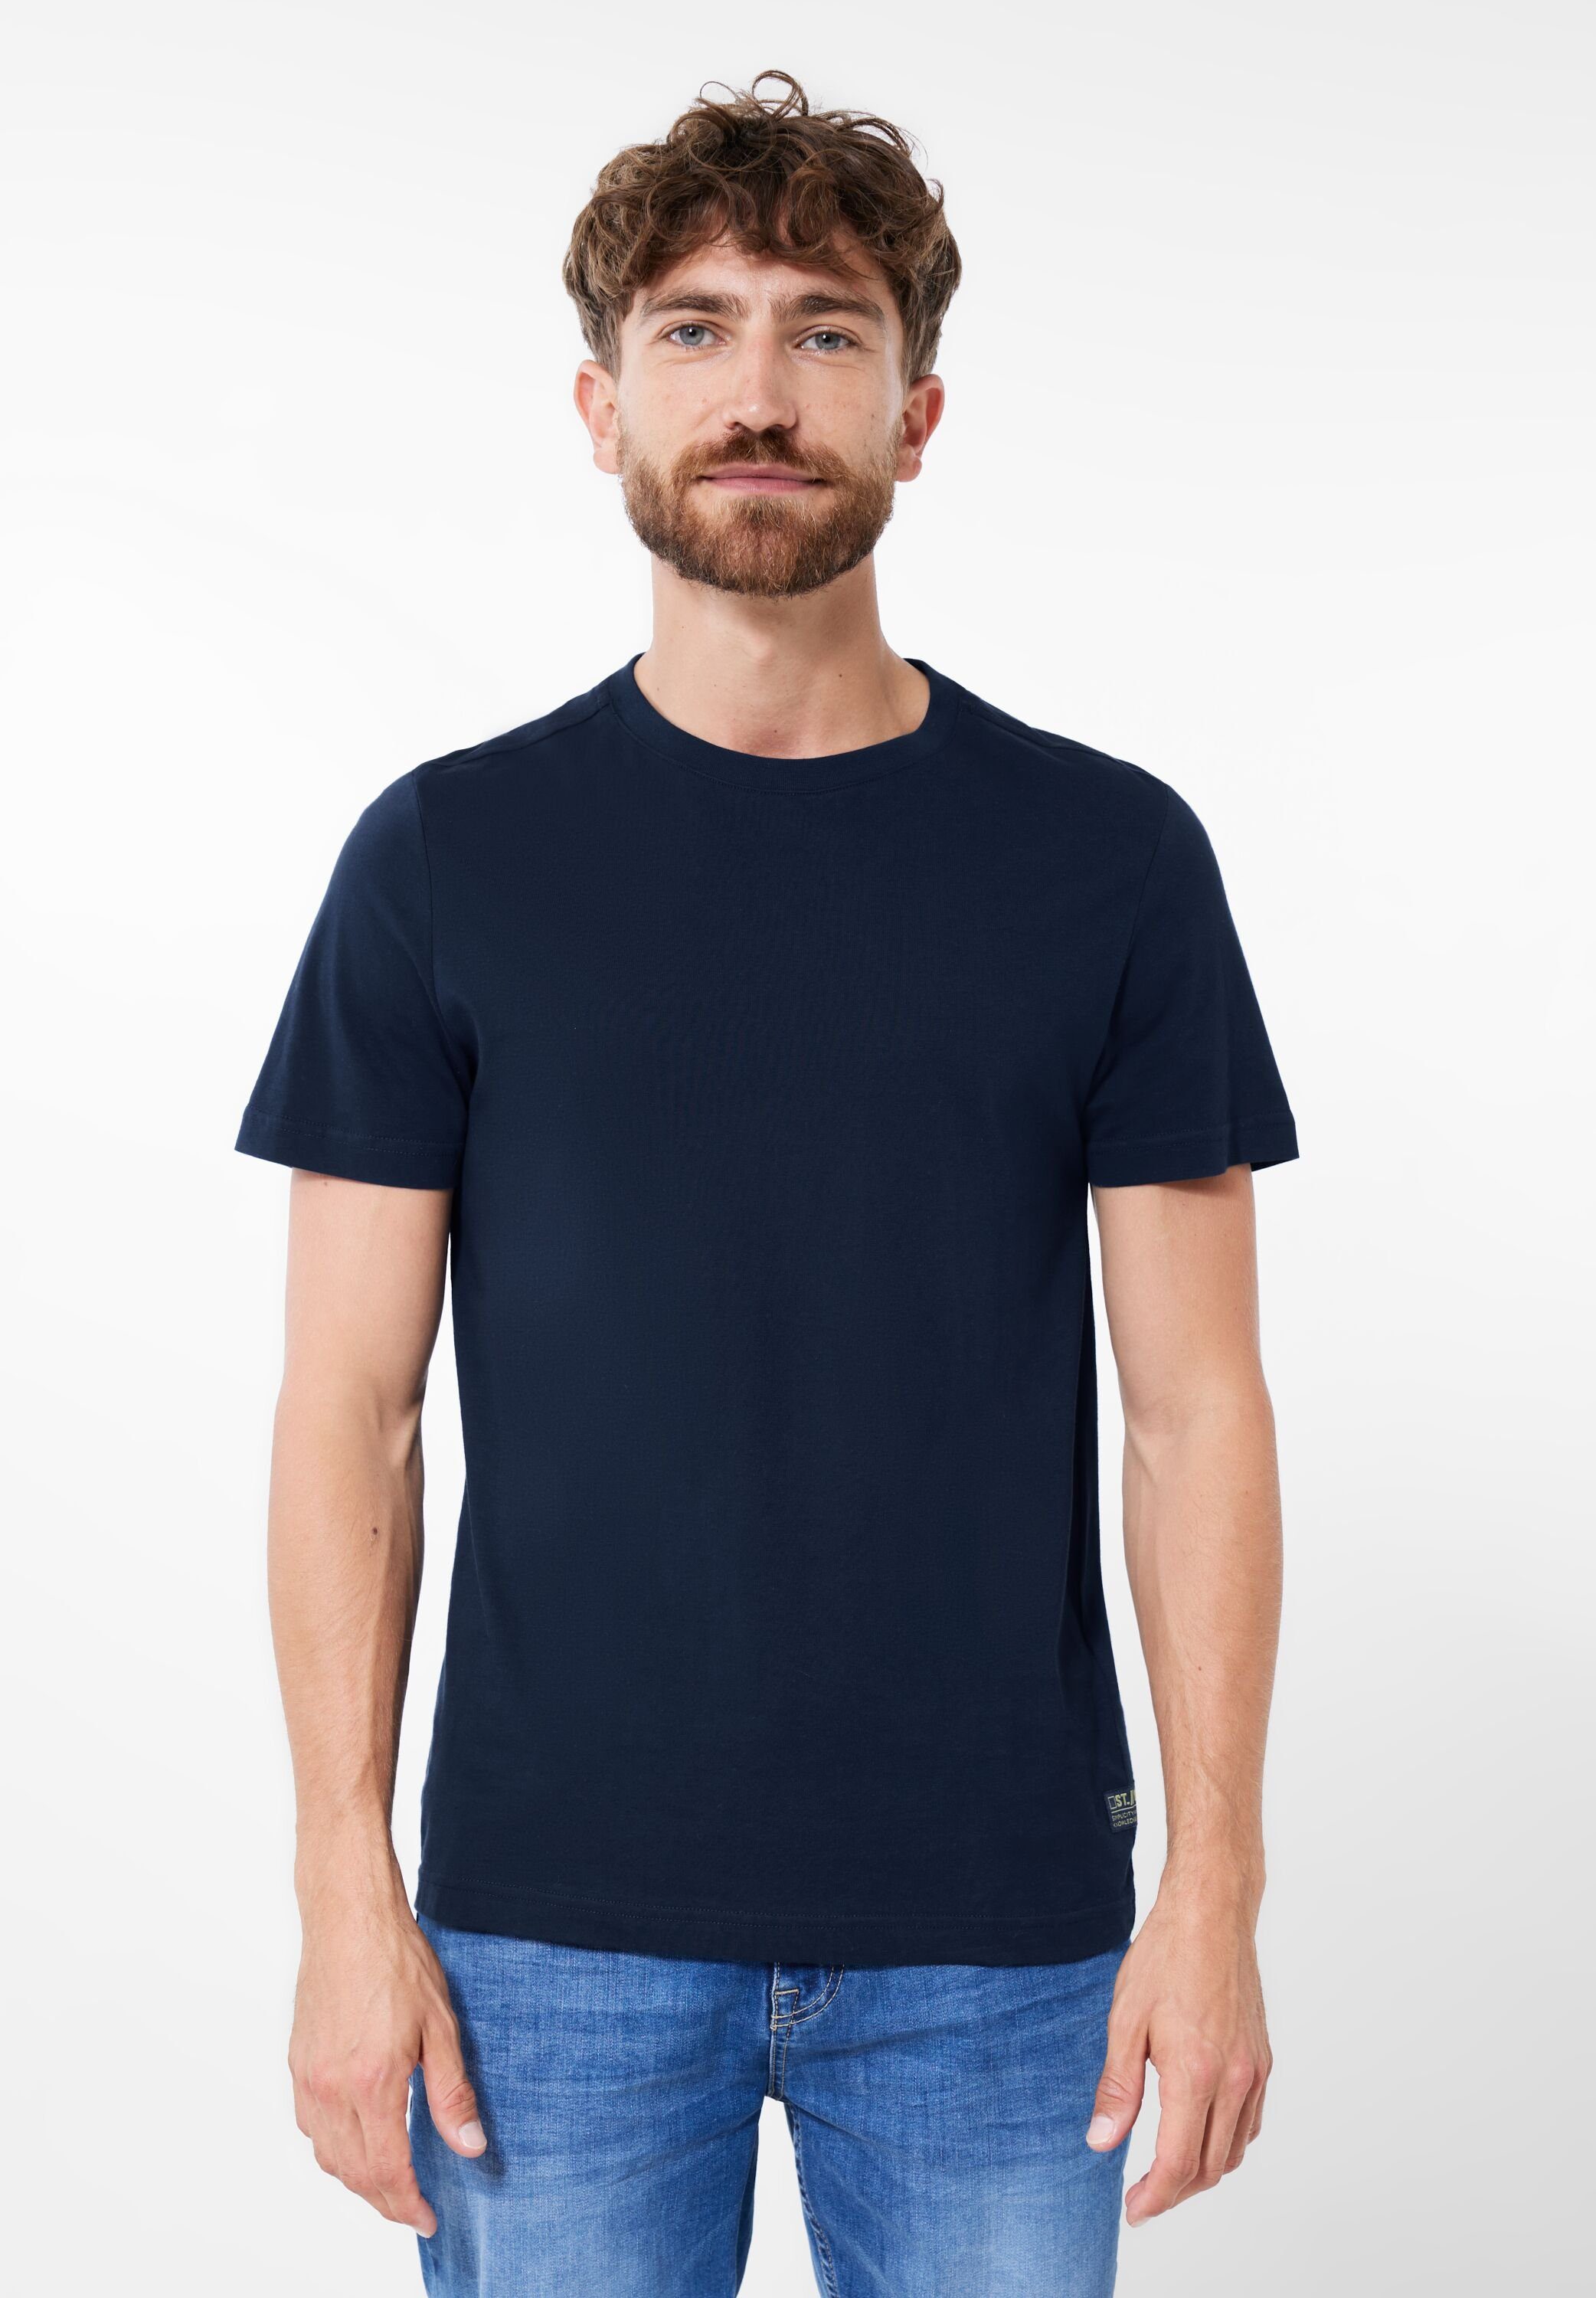 ONE MEN blue STREET T-Shirt navy